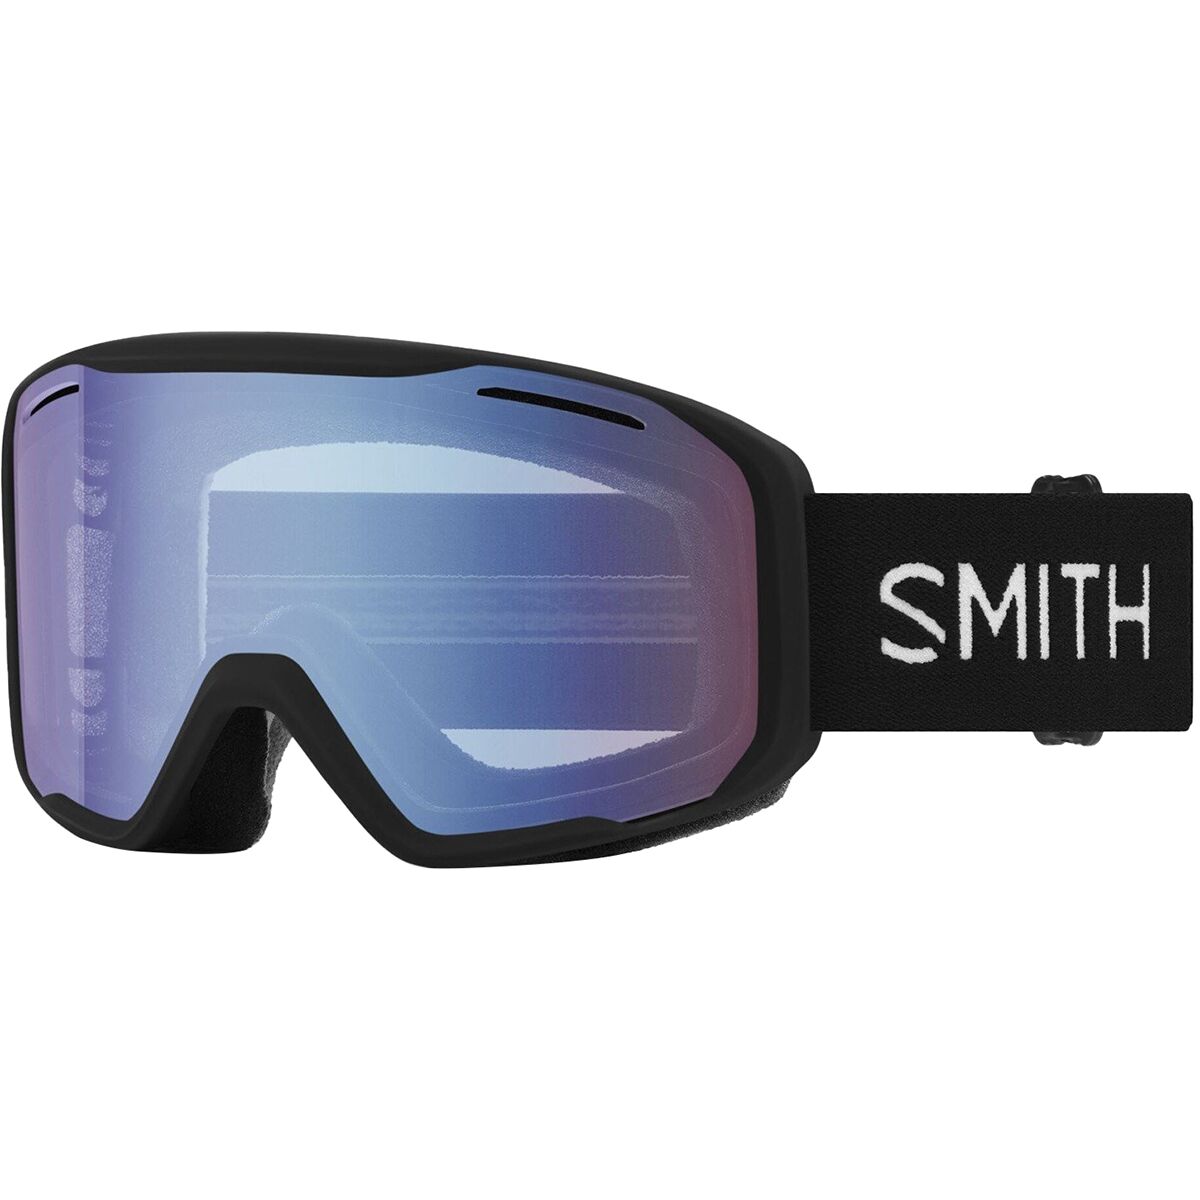 Smith Blazer Goggles